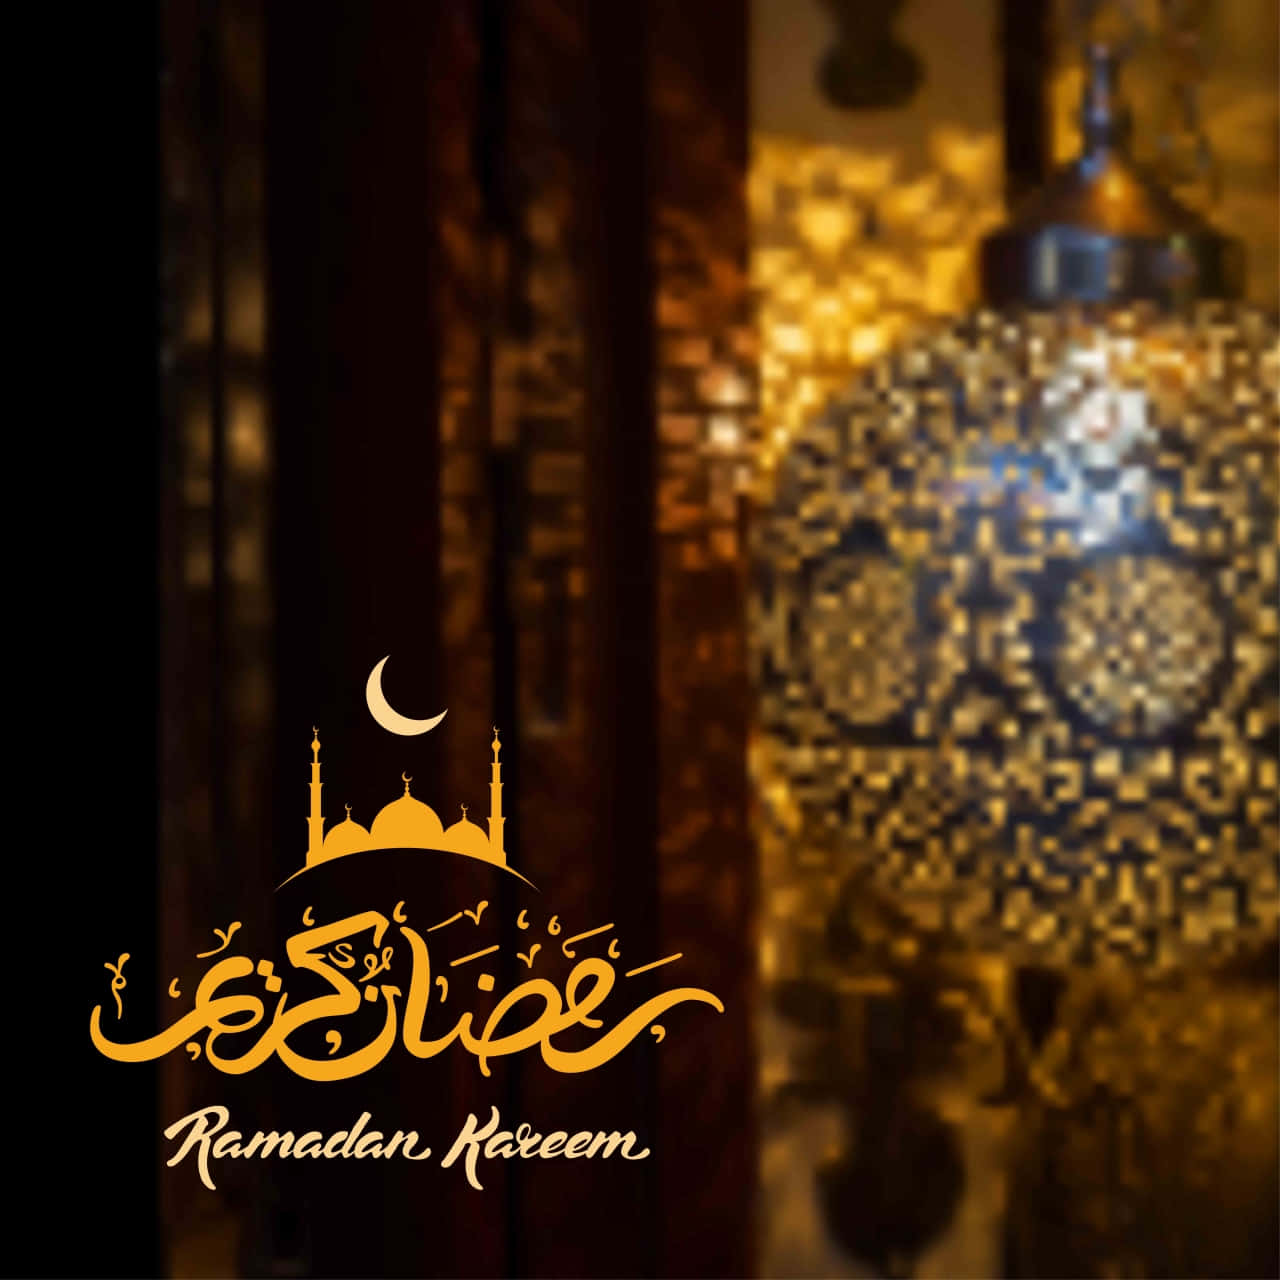 Imagembrilhante De Ramadã Em Ouro